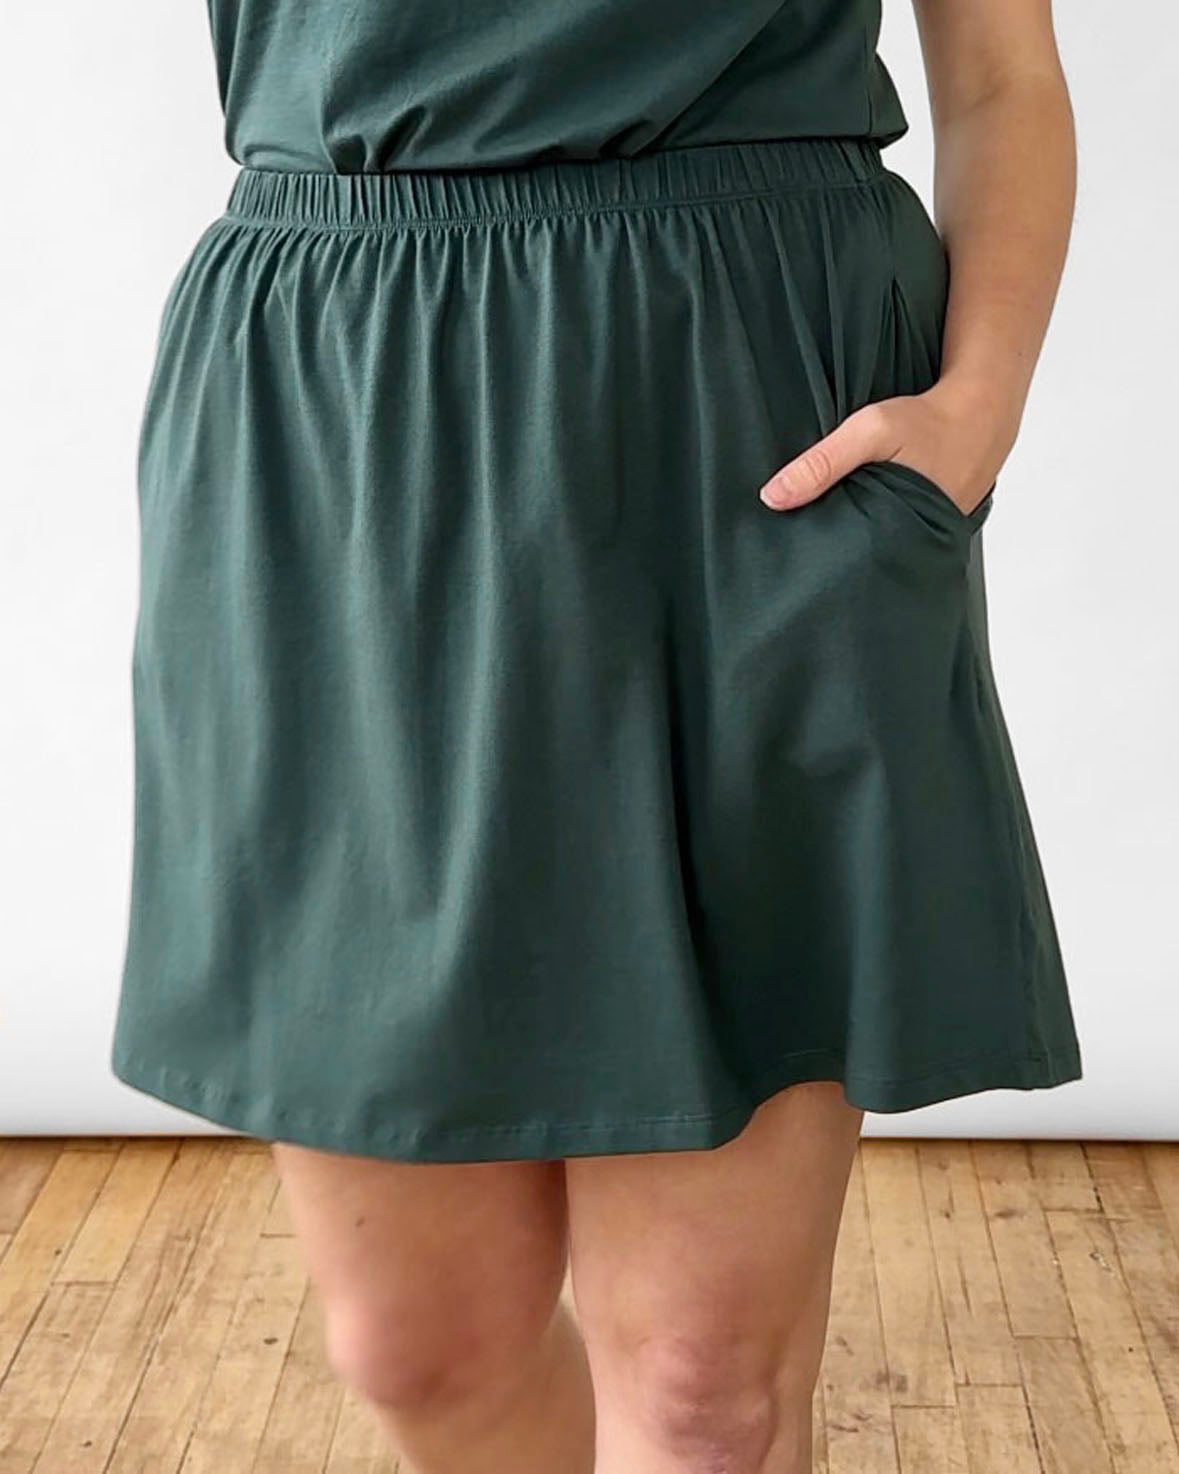 ELISE skirt in Hunter Green